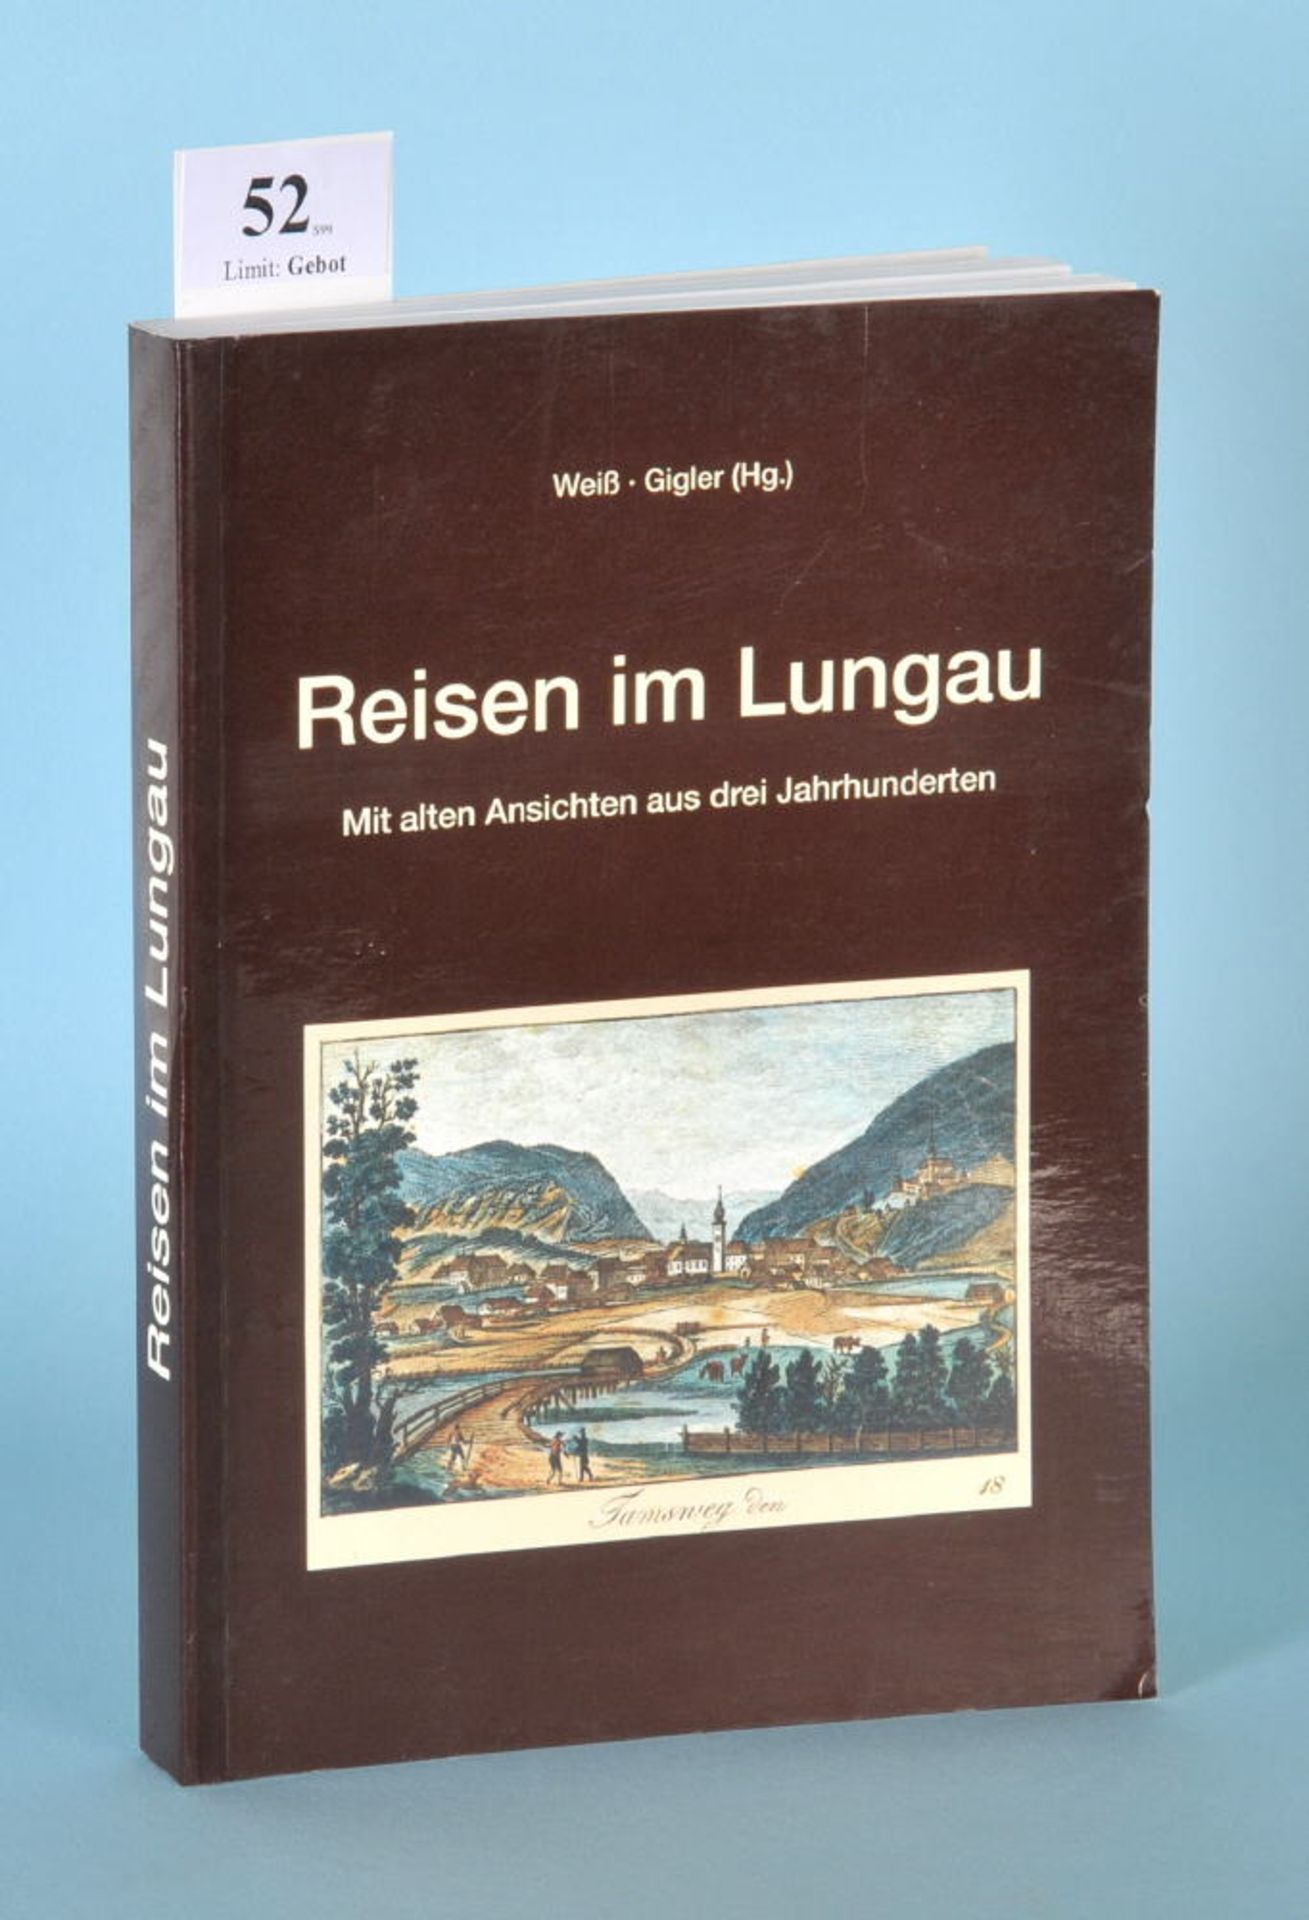 Weiß, A. u. Gigler, C. "Reisen im Lungau - Mit alten...""...Ansichten aus drei Jahrhunderten (